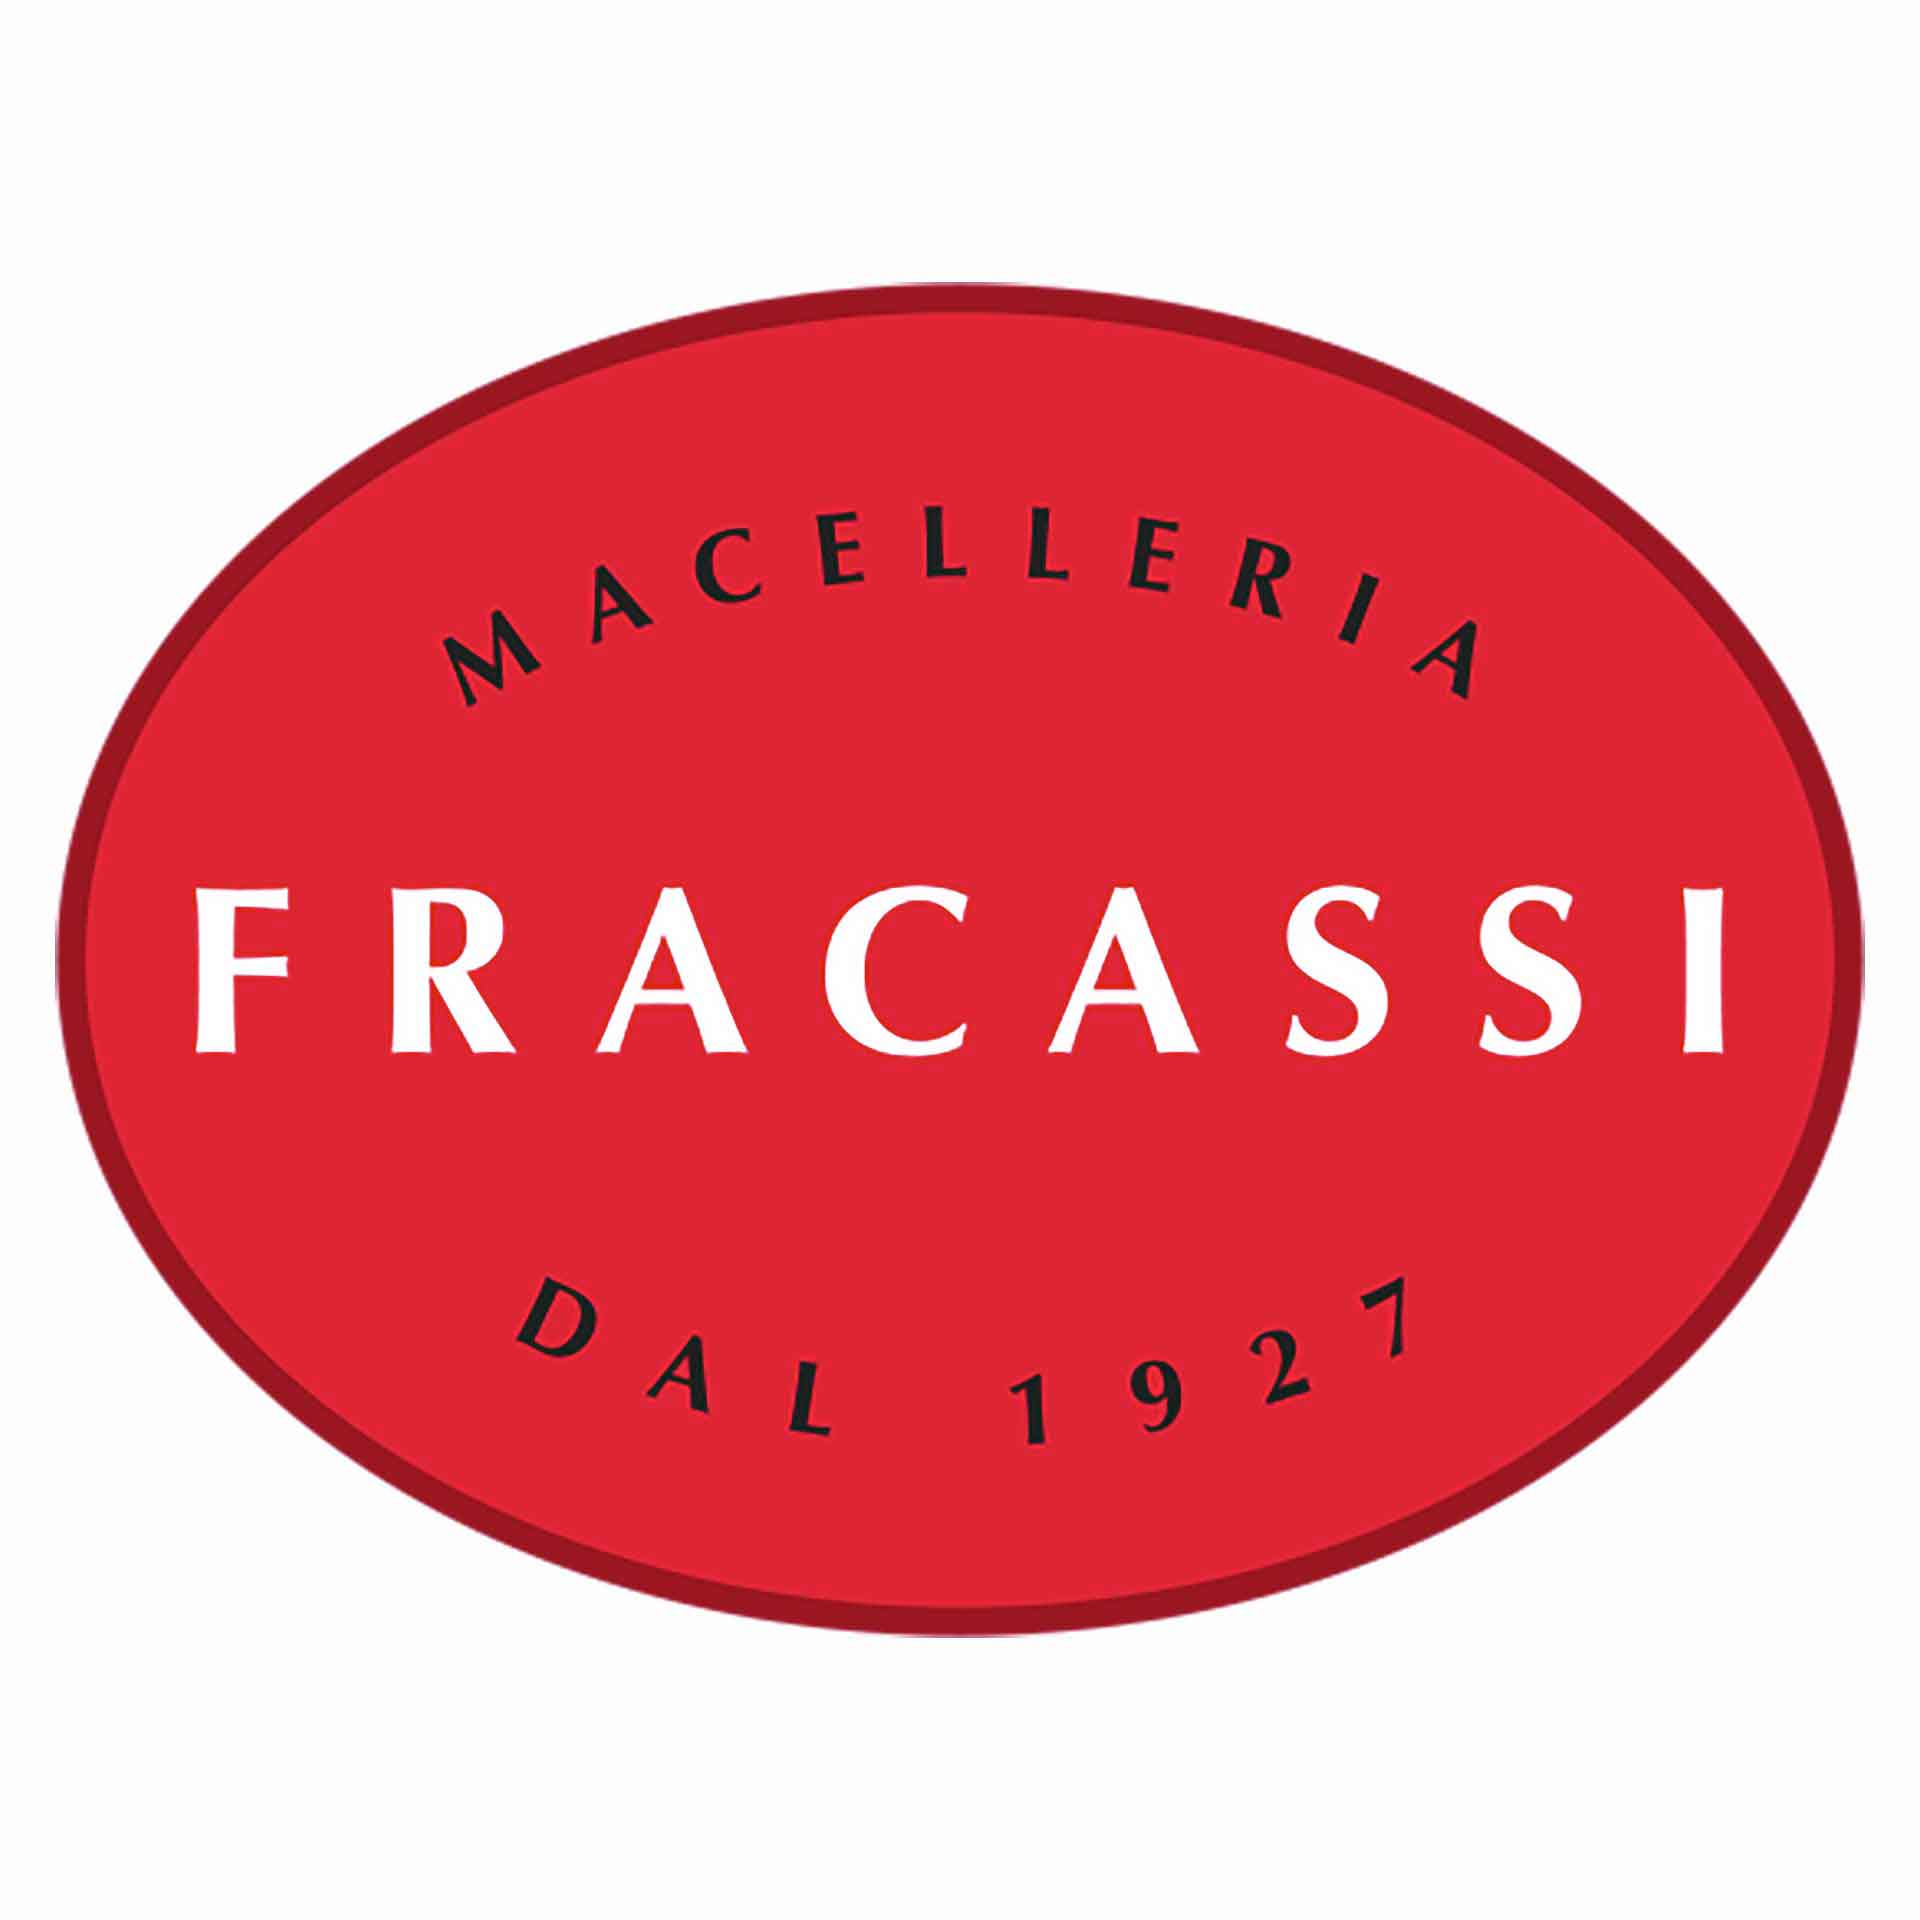 Macelleria Fracassi Simone